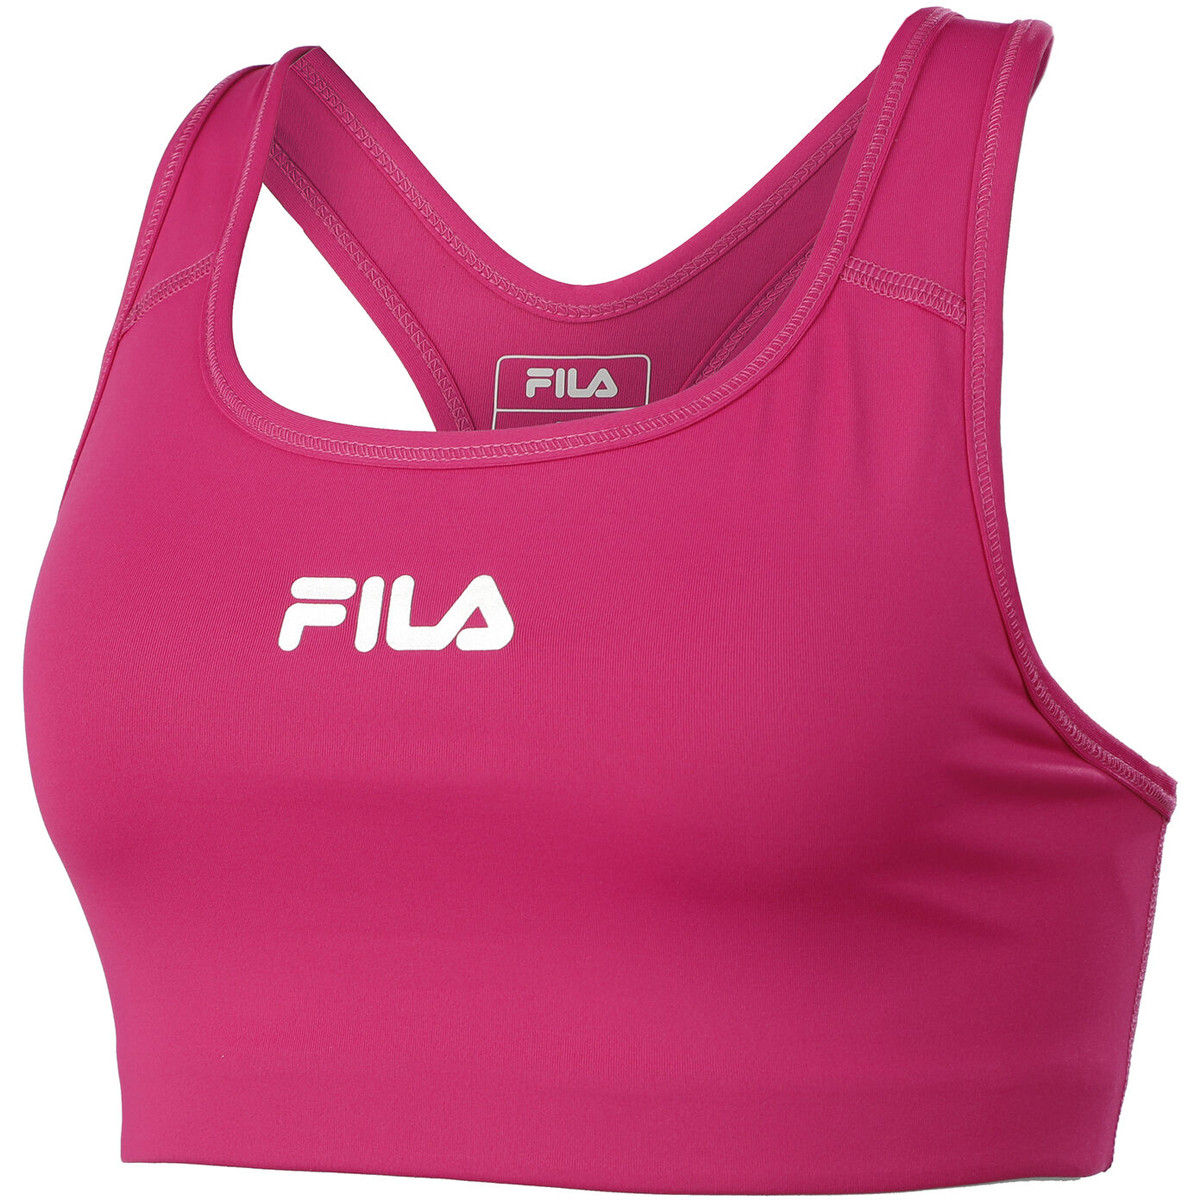 FILA LEA SPORTS BRA - FILA - Women's - Clothing